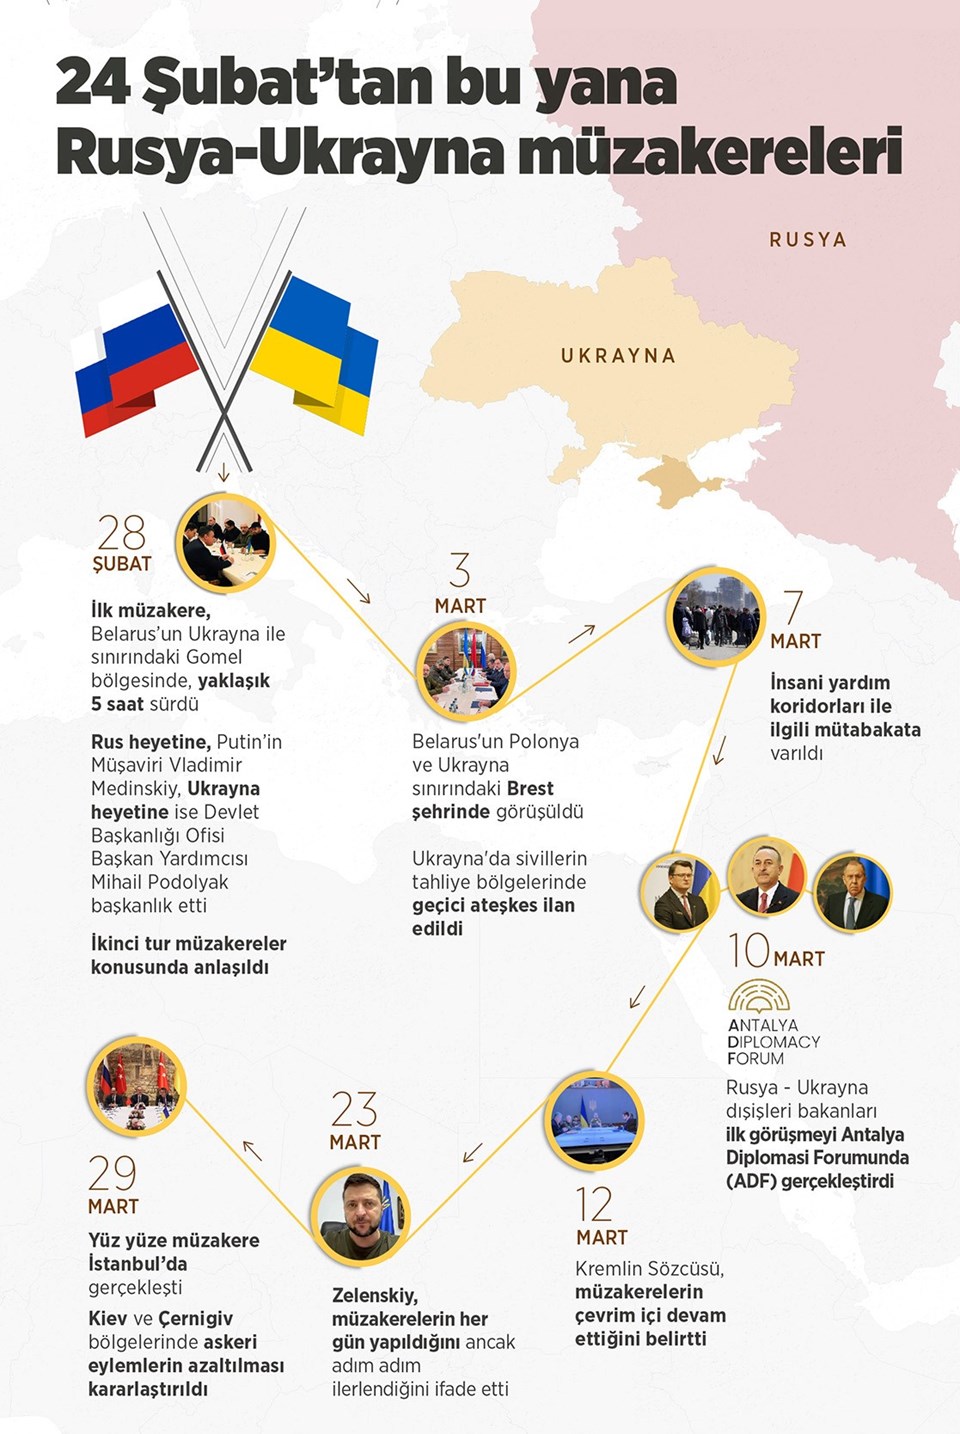 Ukrayna-Rusya savaşının başlamasından bu yana iki ülke arasında 7 kez müzakere yapıldı.